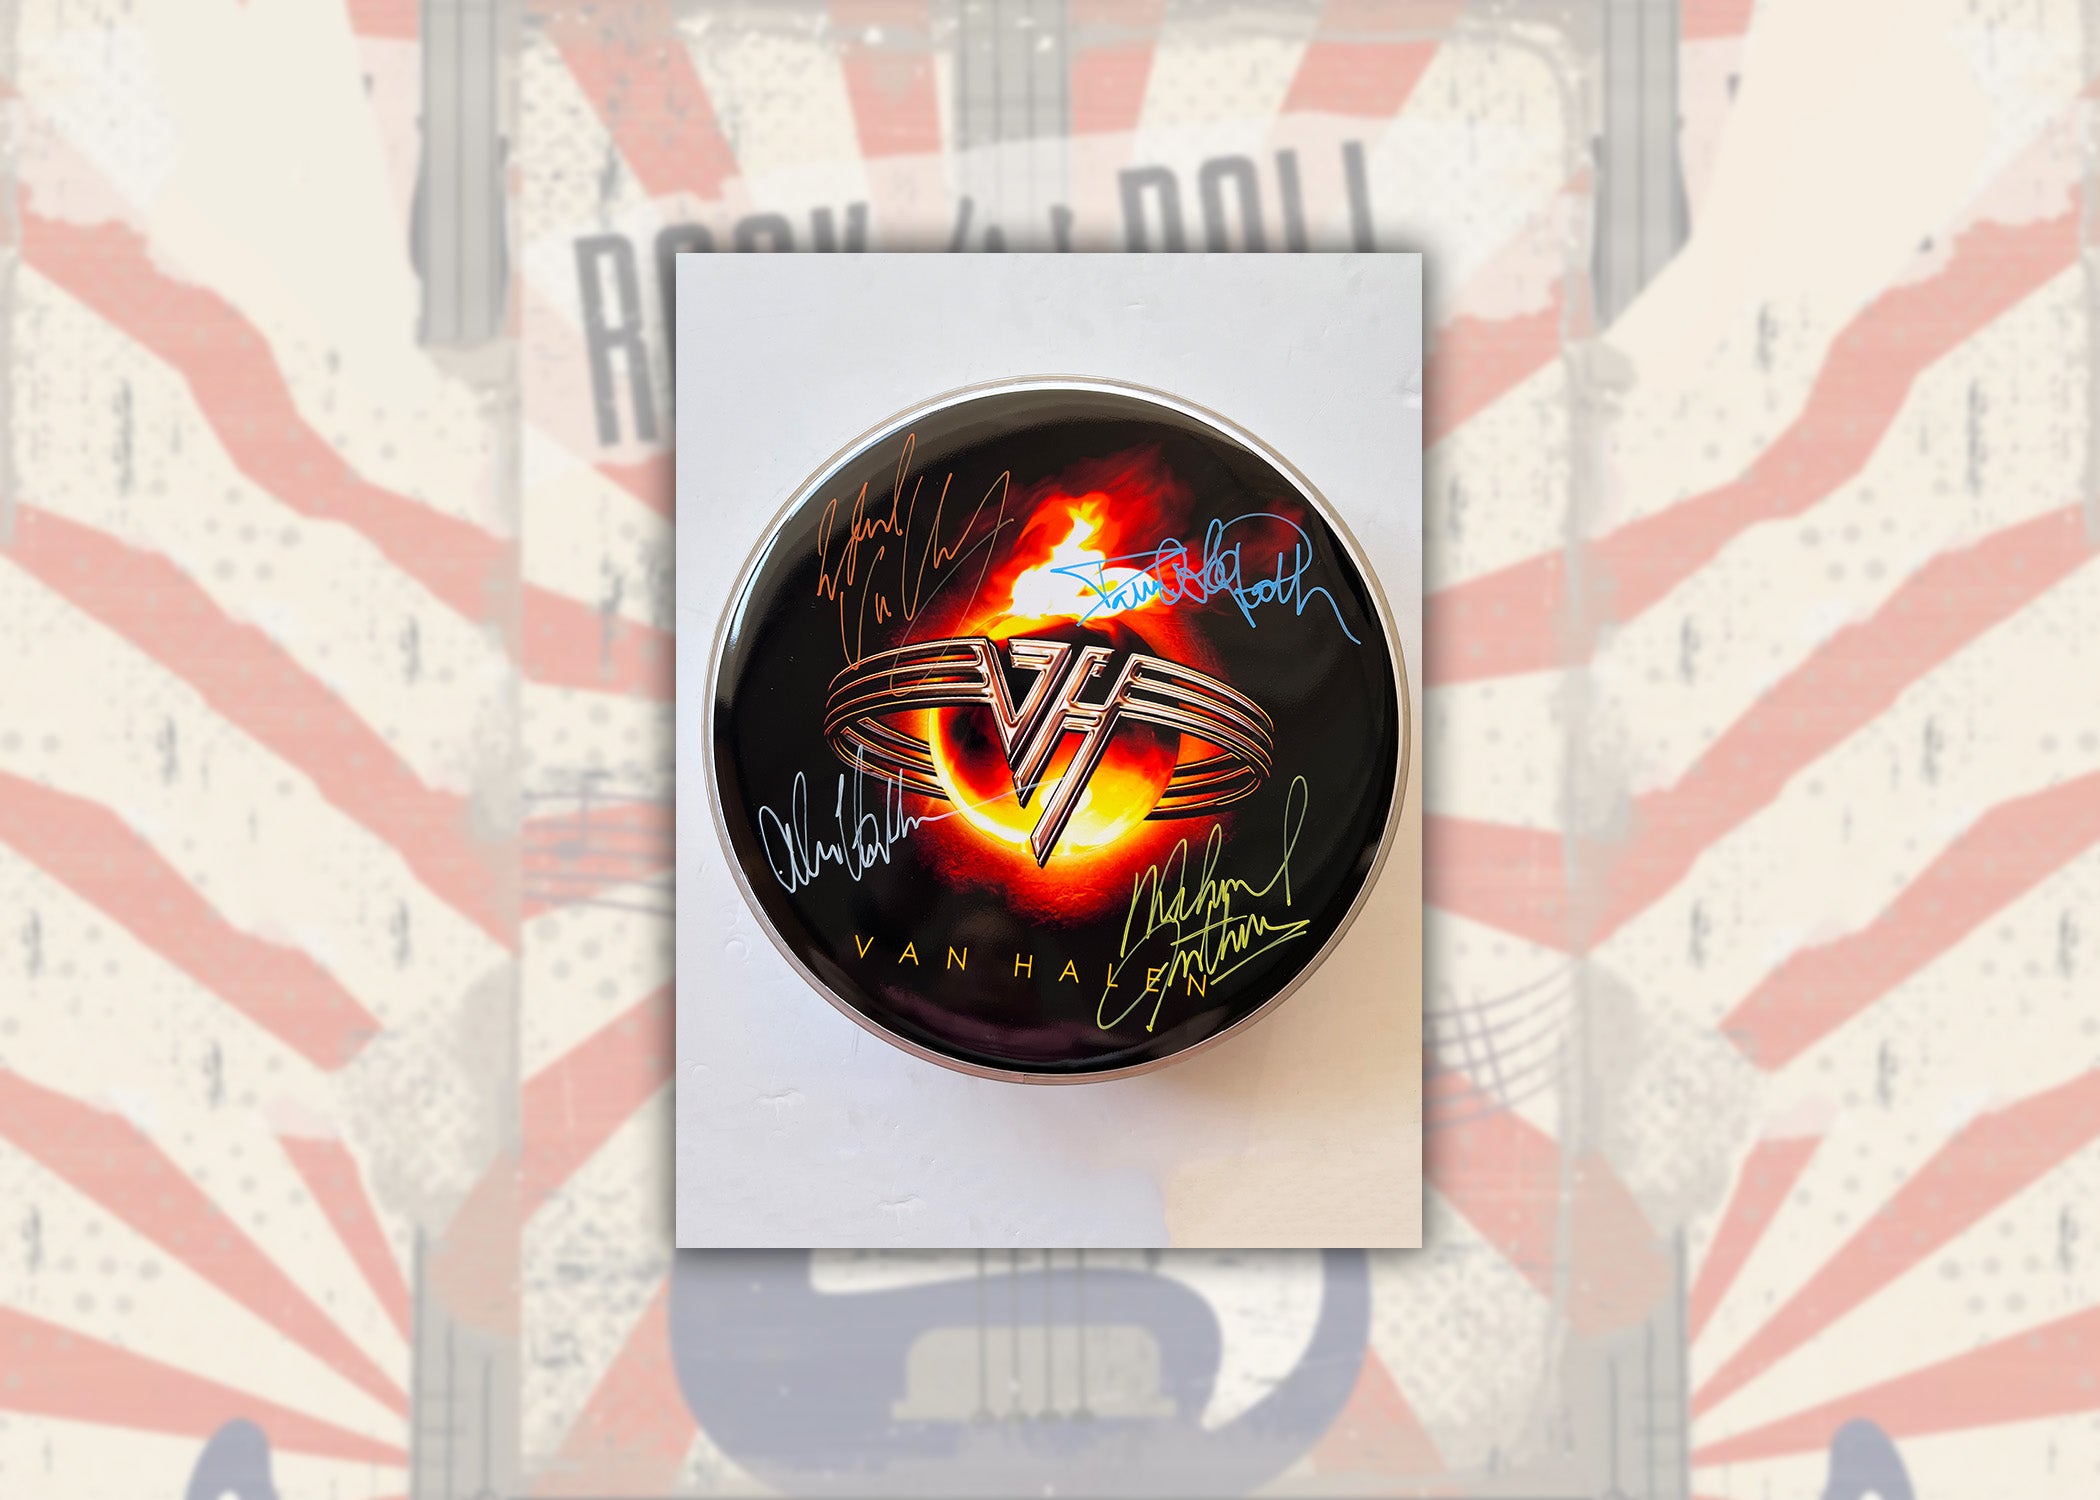 Eddie Van Halen, David Lee Roth, Alex Van Halen, Michael Anthony one-of-a-kind drumhead signed with proof